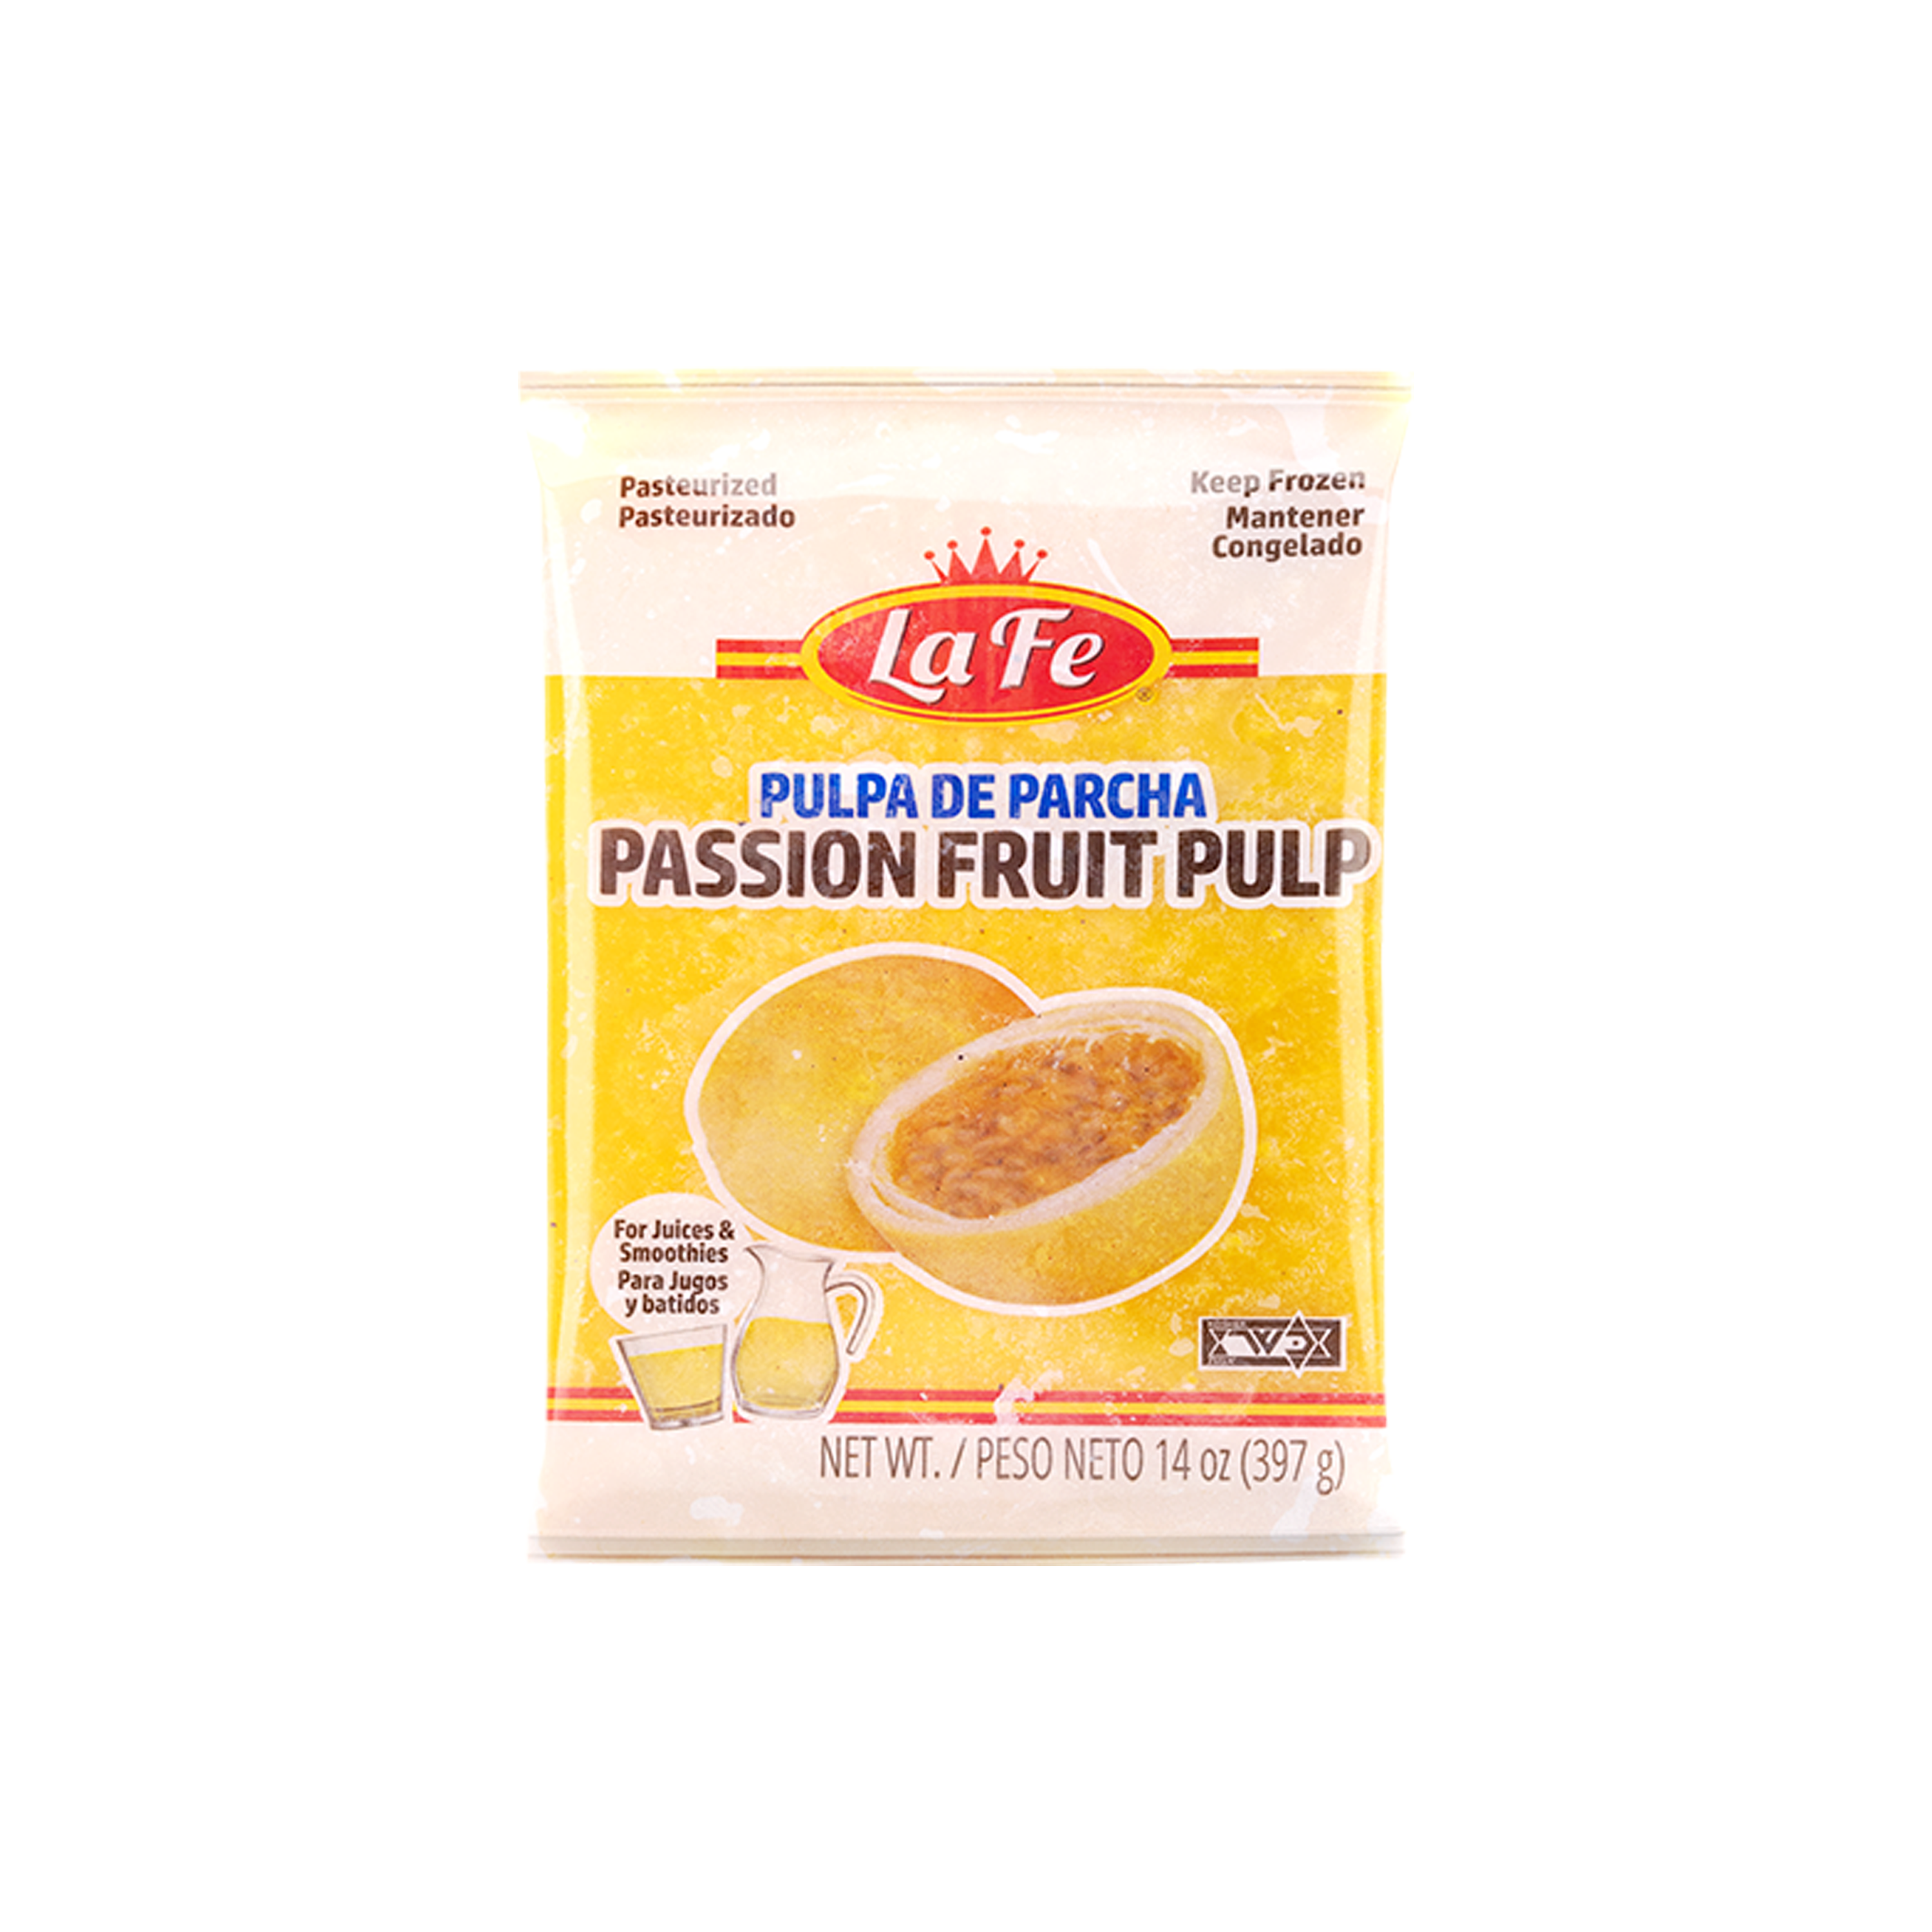 LaFe Passion Fruit Pulp 400g